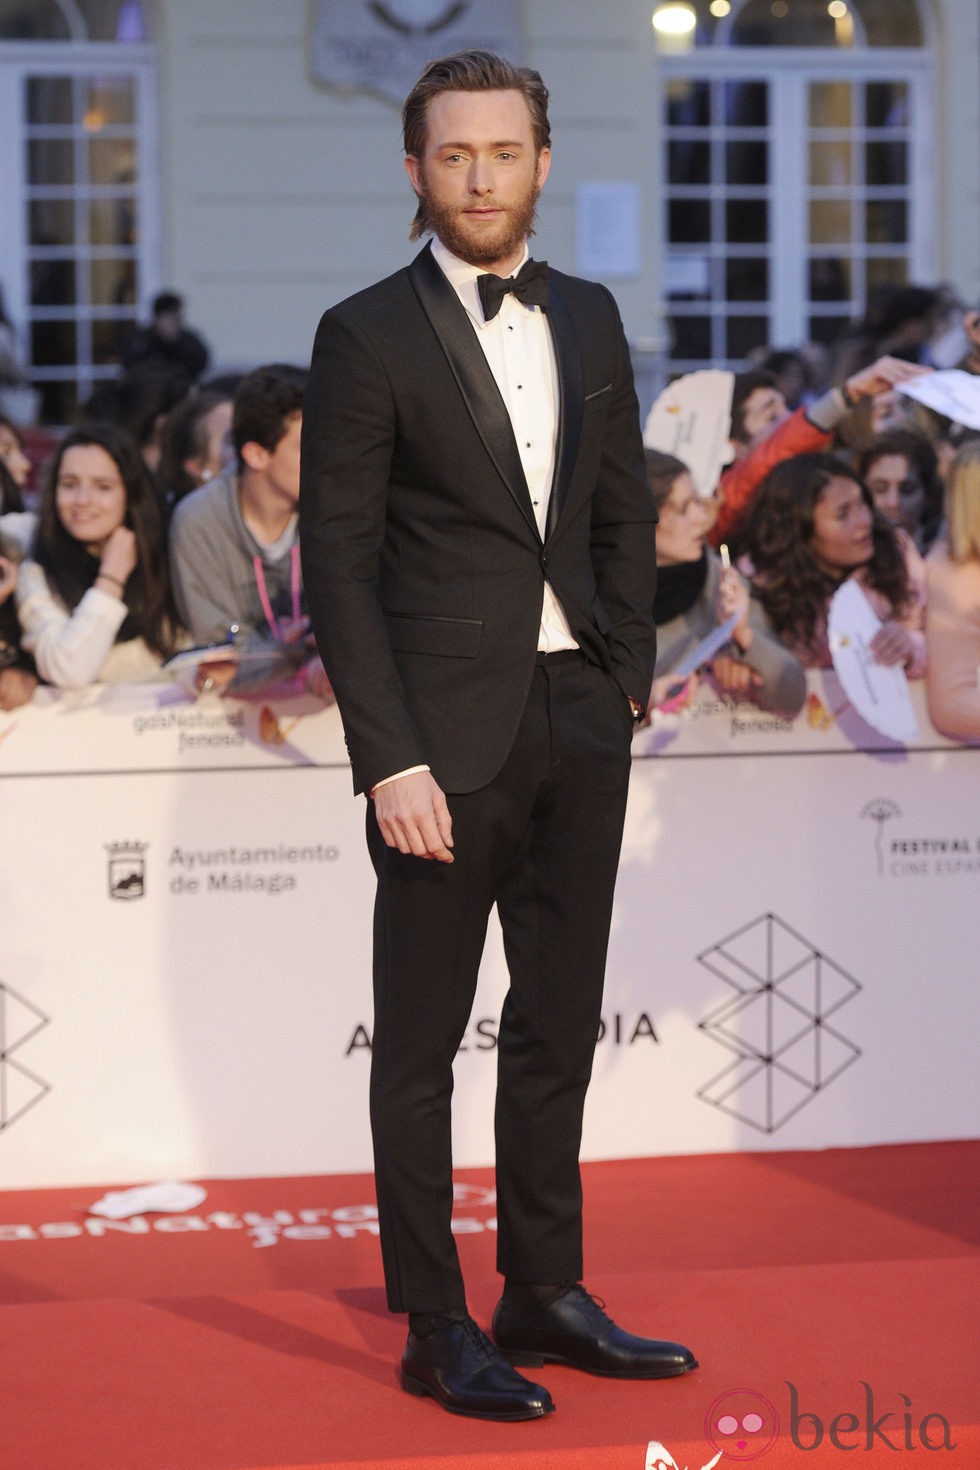 Pablo Rivero en la gala de clausura del Festival de Málaga 2014